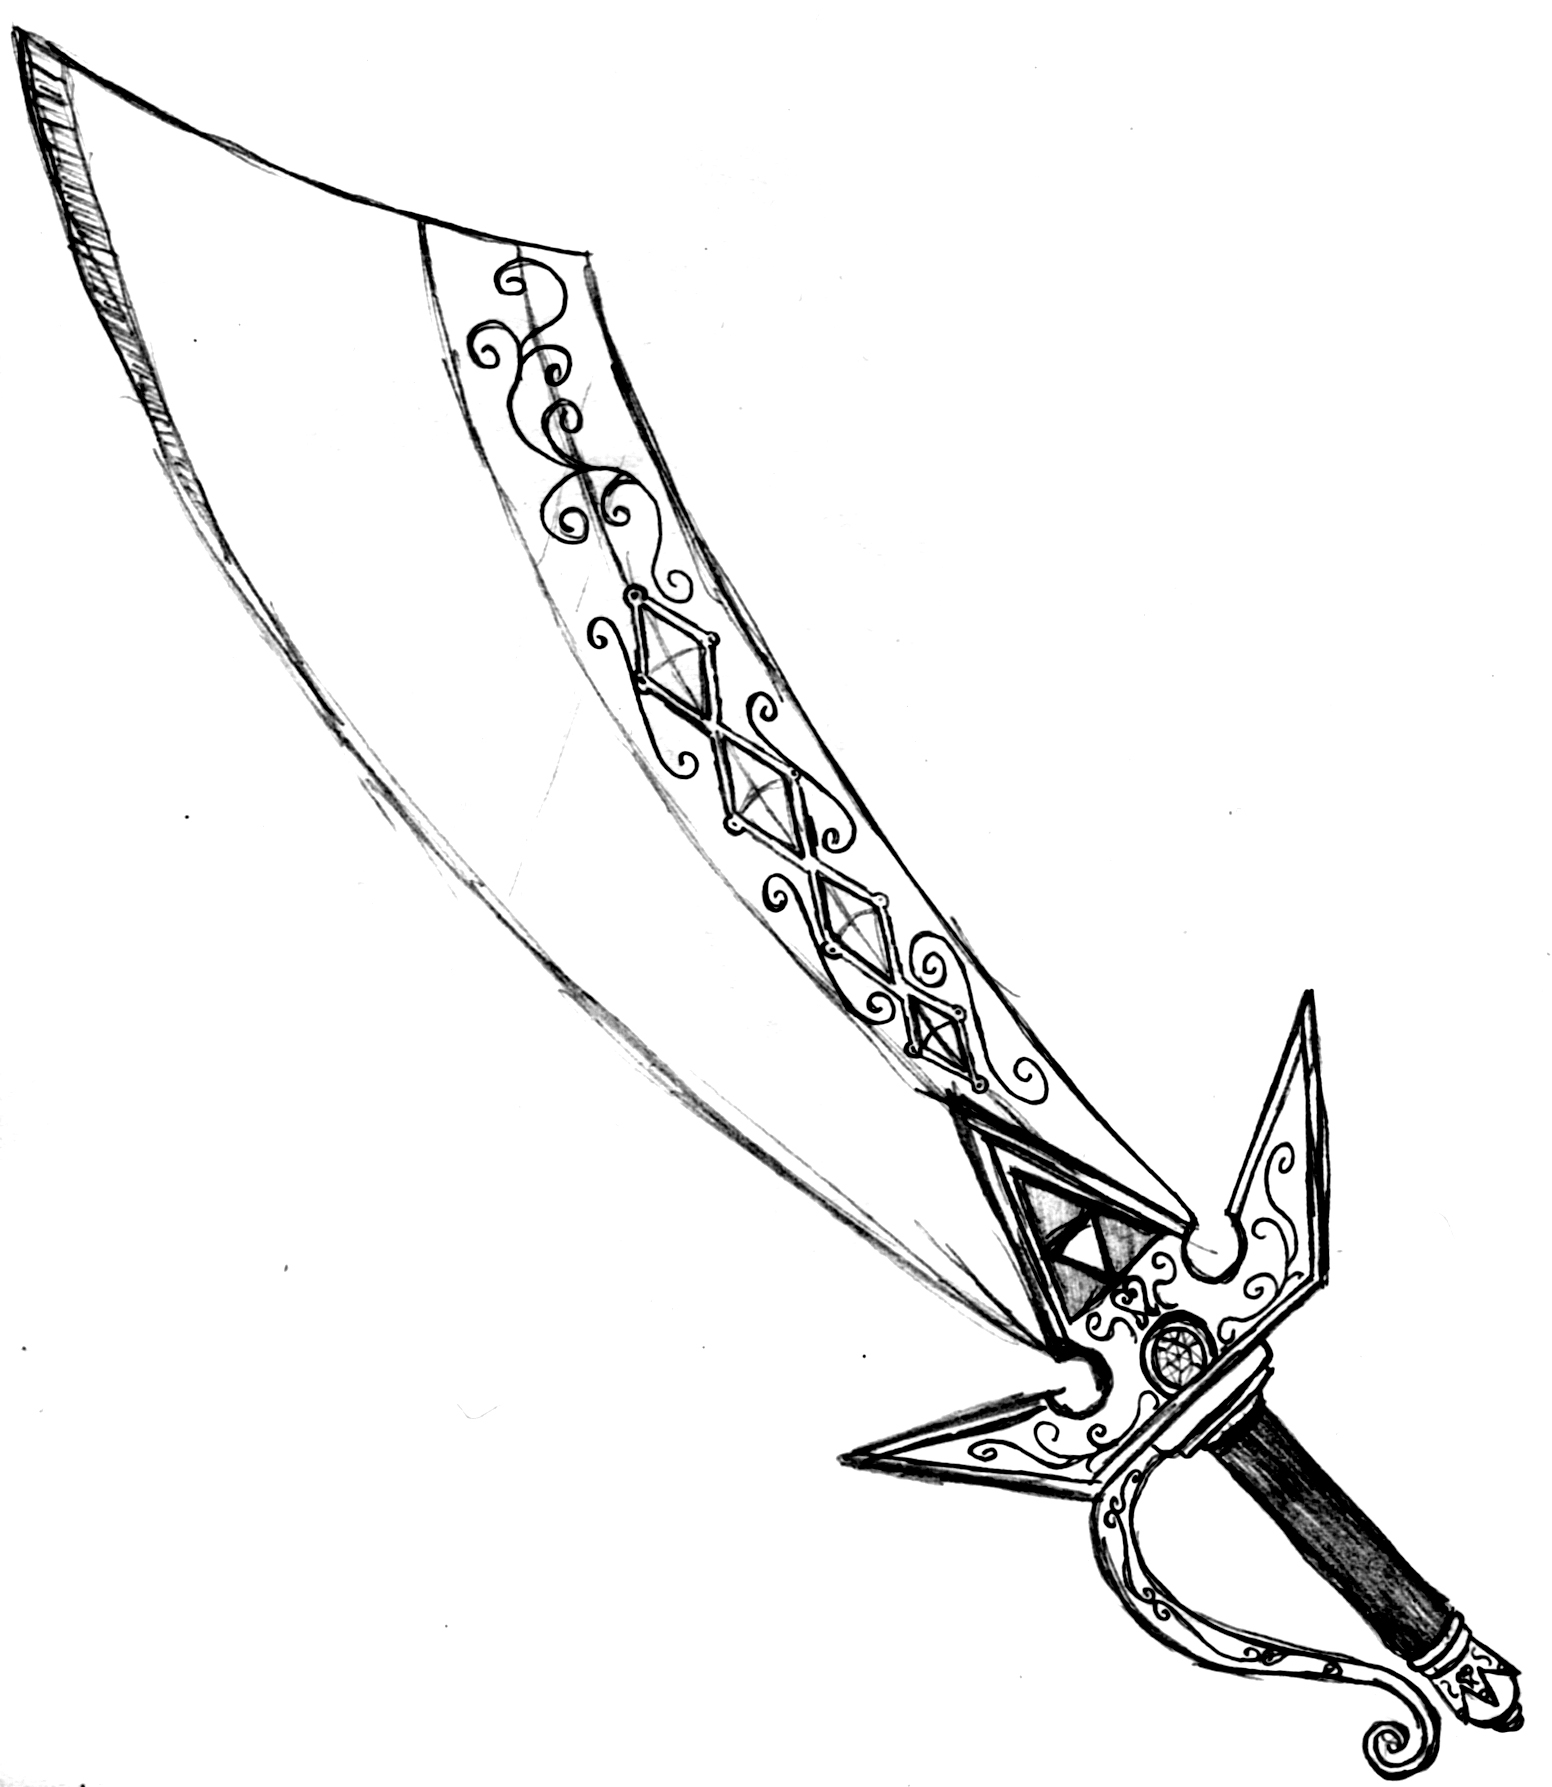 drawings of medieval swords